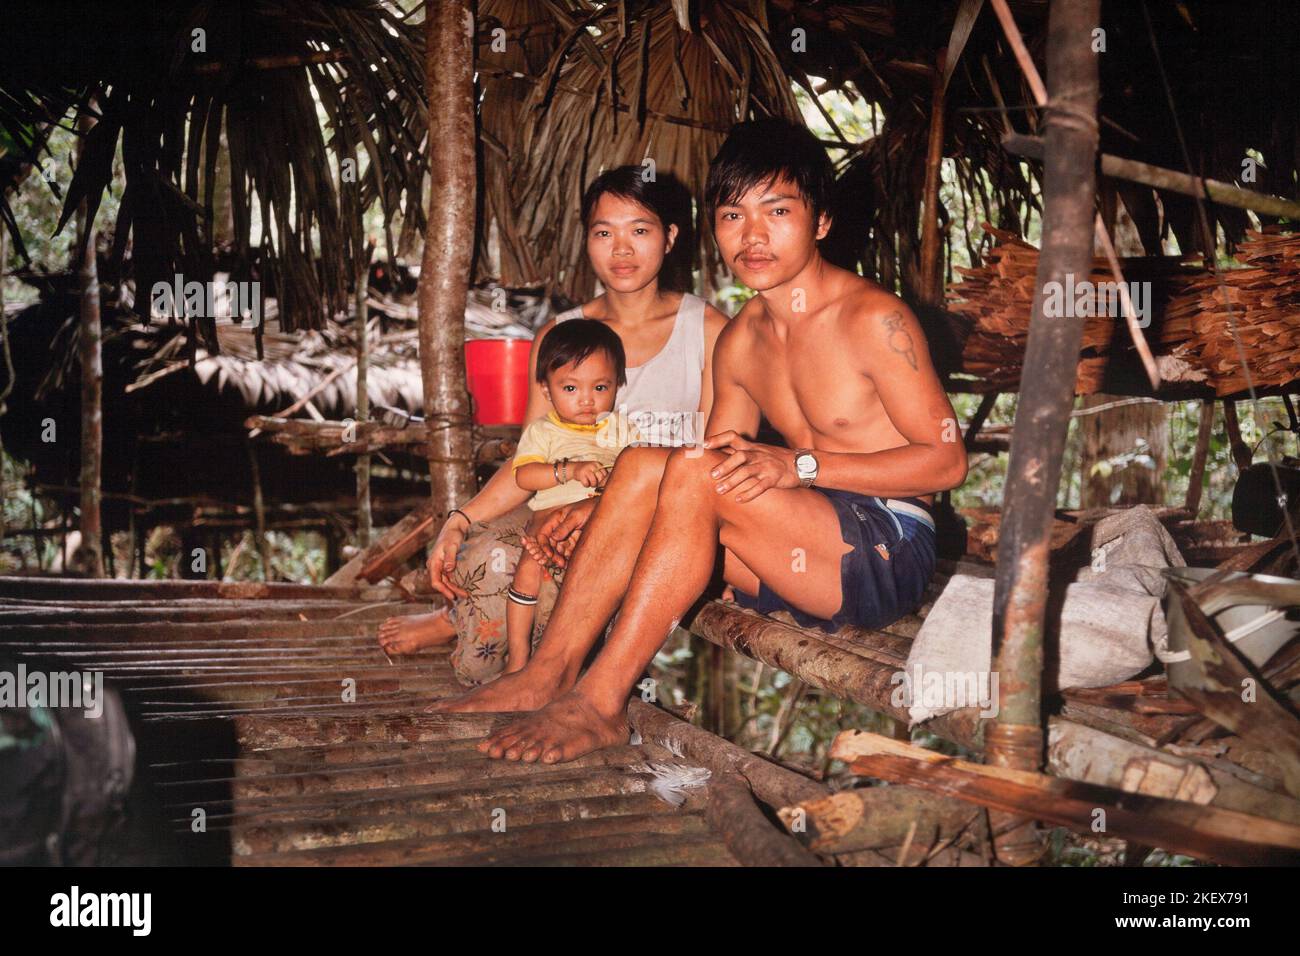 Pueblo indígena penan de Sarawak, Borneo, grupo familiar, Malasia Oriental Foto de stock